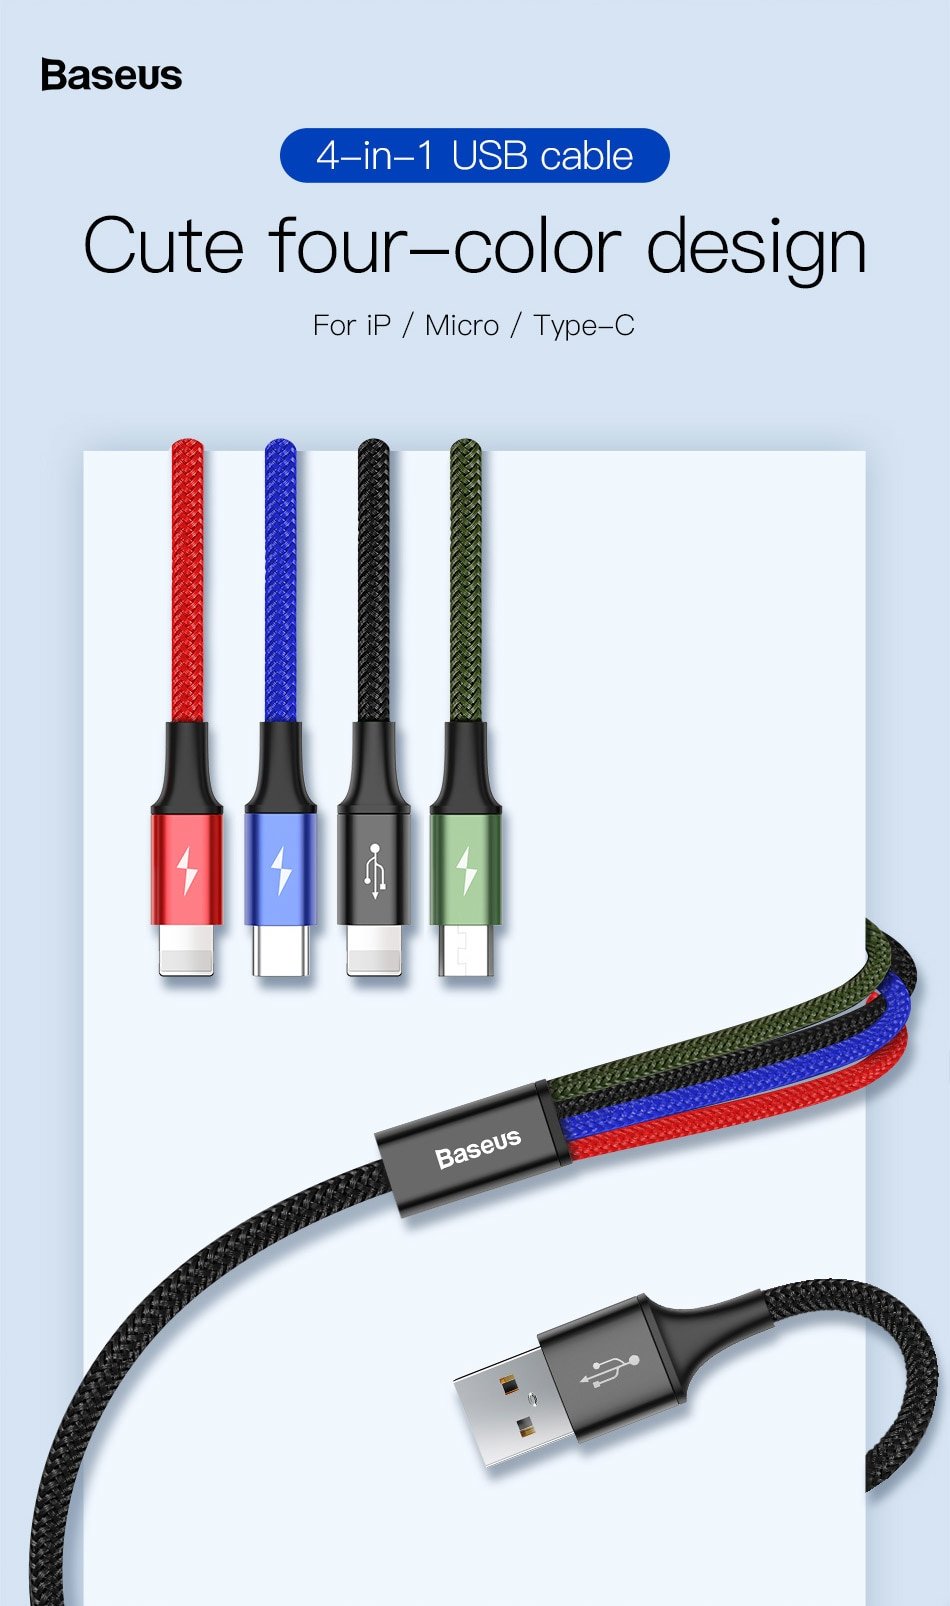 Cáp sạc đa năng 4 trong 1 cho điện thoại/ I-pad CA1T4 3.5A Baseus Rapid Series 4 in 1 cable (3.5A, 1.2M, for I-phone, Type-C, Micro, Fast charge 4 in 1 Cable)2 LIGHT-NING- Hàng chính hãng